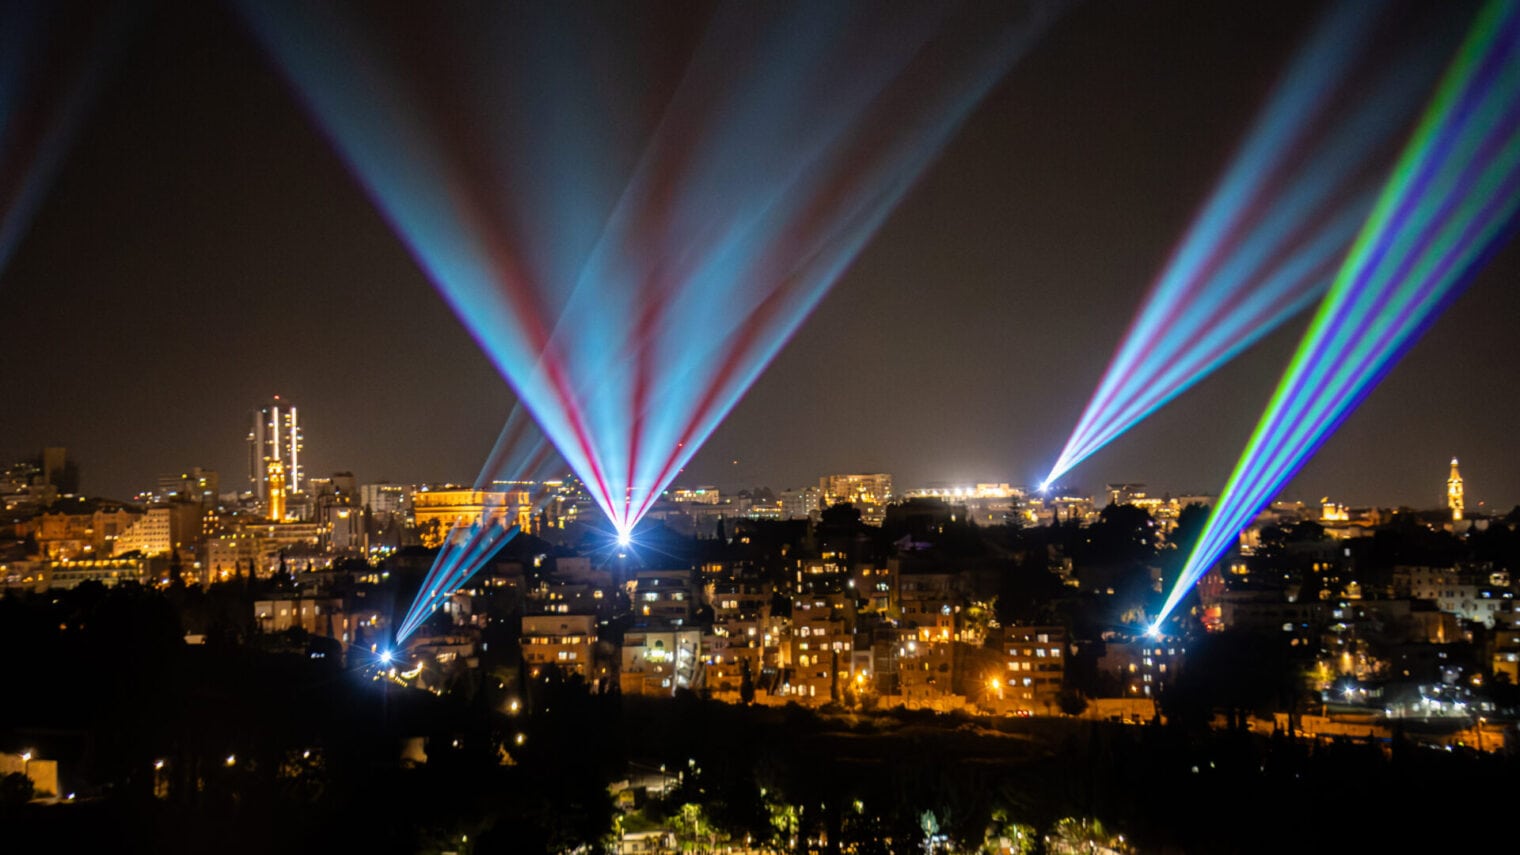 Jerusalem debuts spectacular laser light and sound show - ISRAEL21c